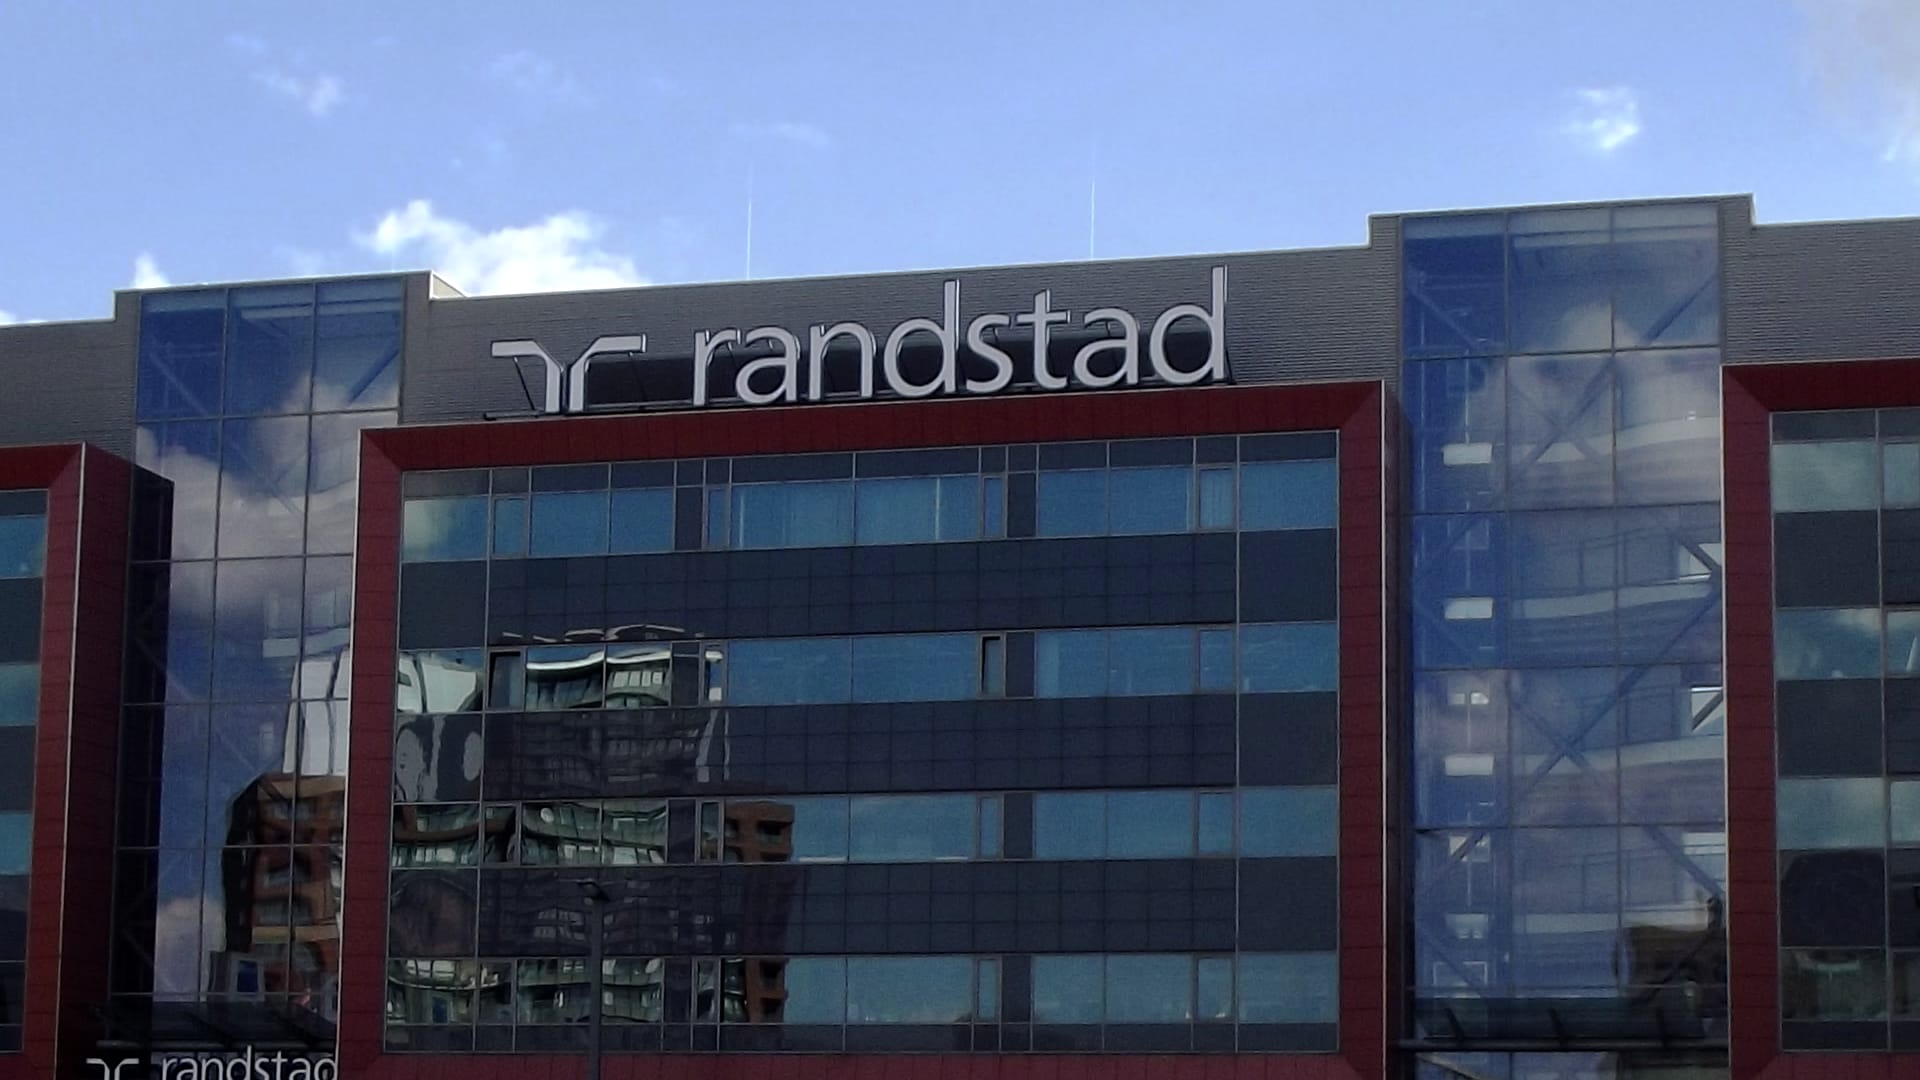 Estudo de caso da Randstad